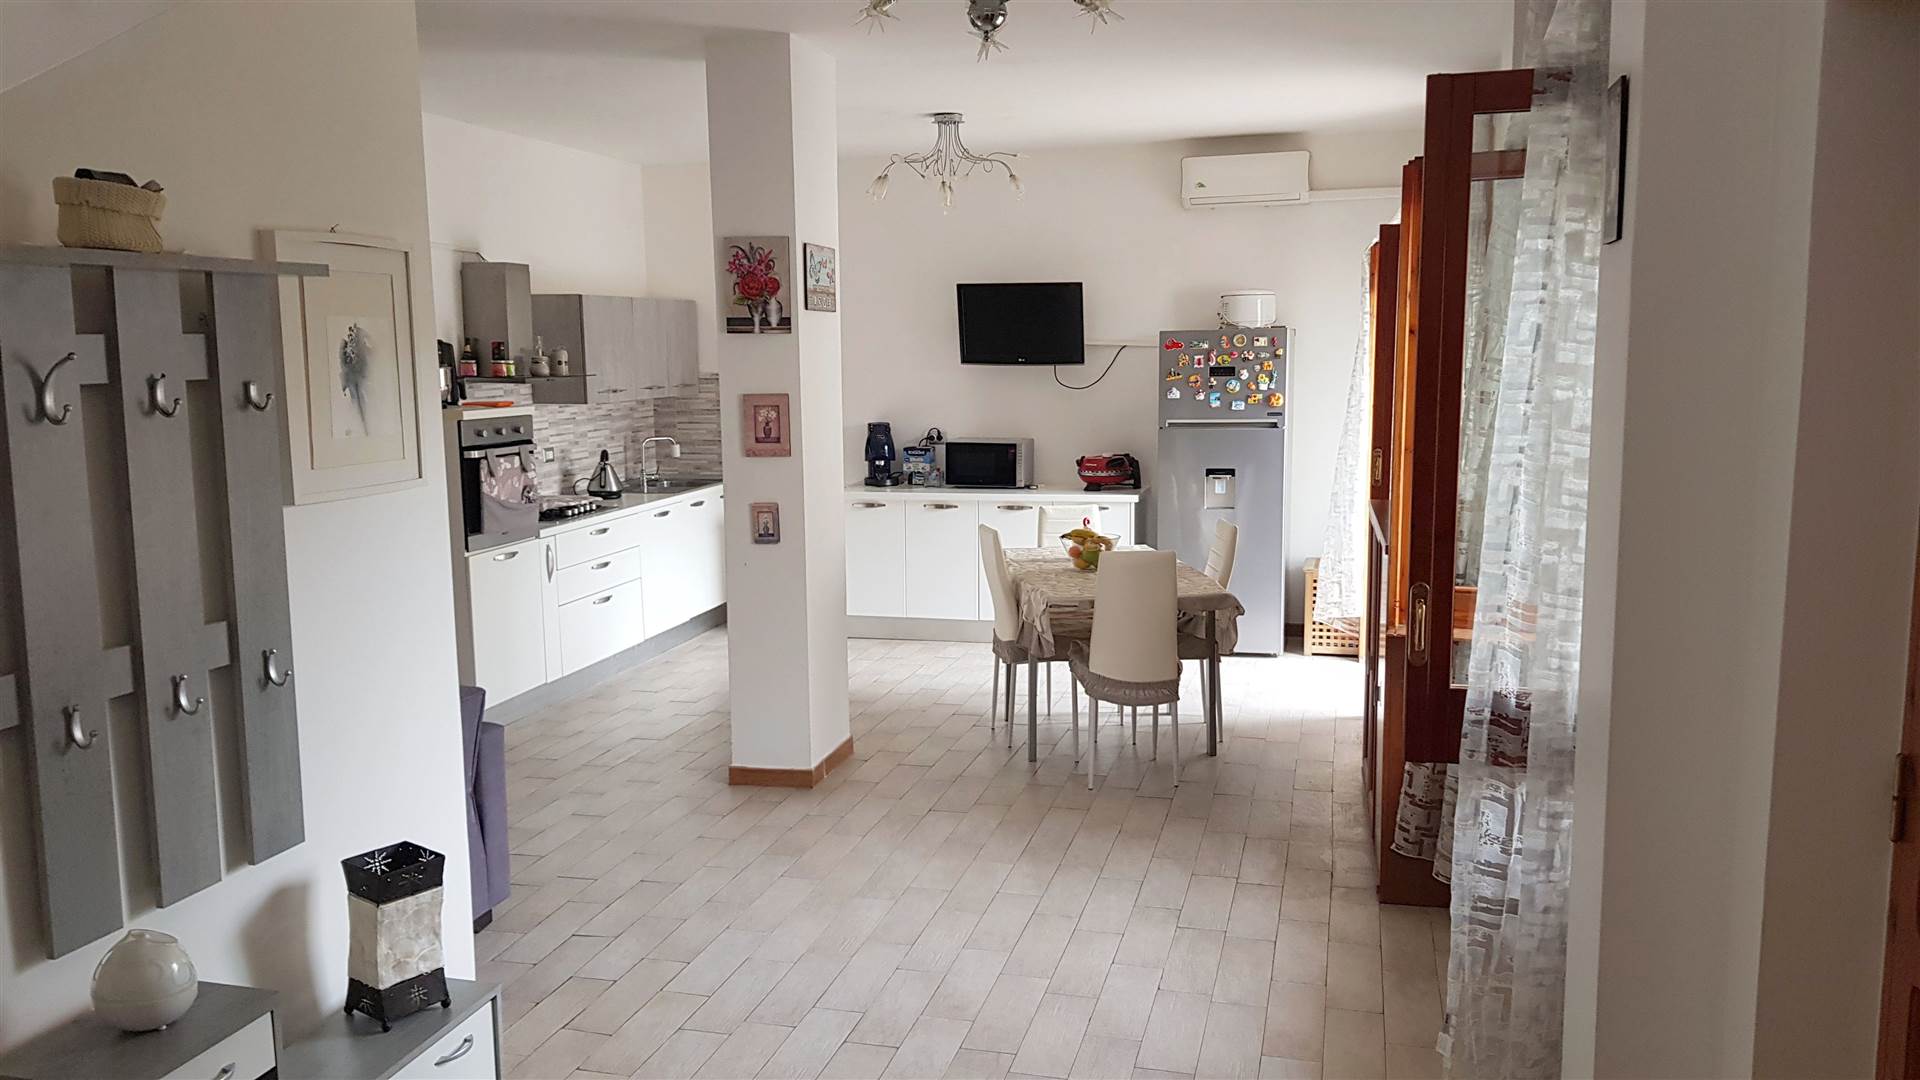 Appartamento in vendita a Pellezzano, 4 locali, zona rchia, prezzo € 145.000 | PortaleAgenzieImmobiliari.it